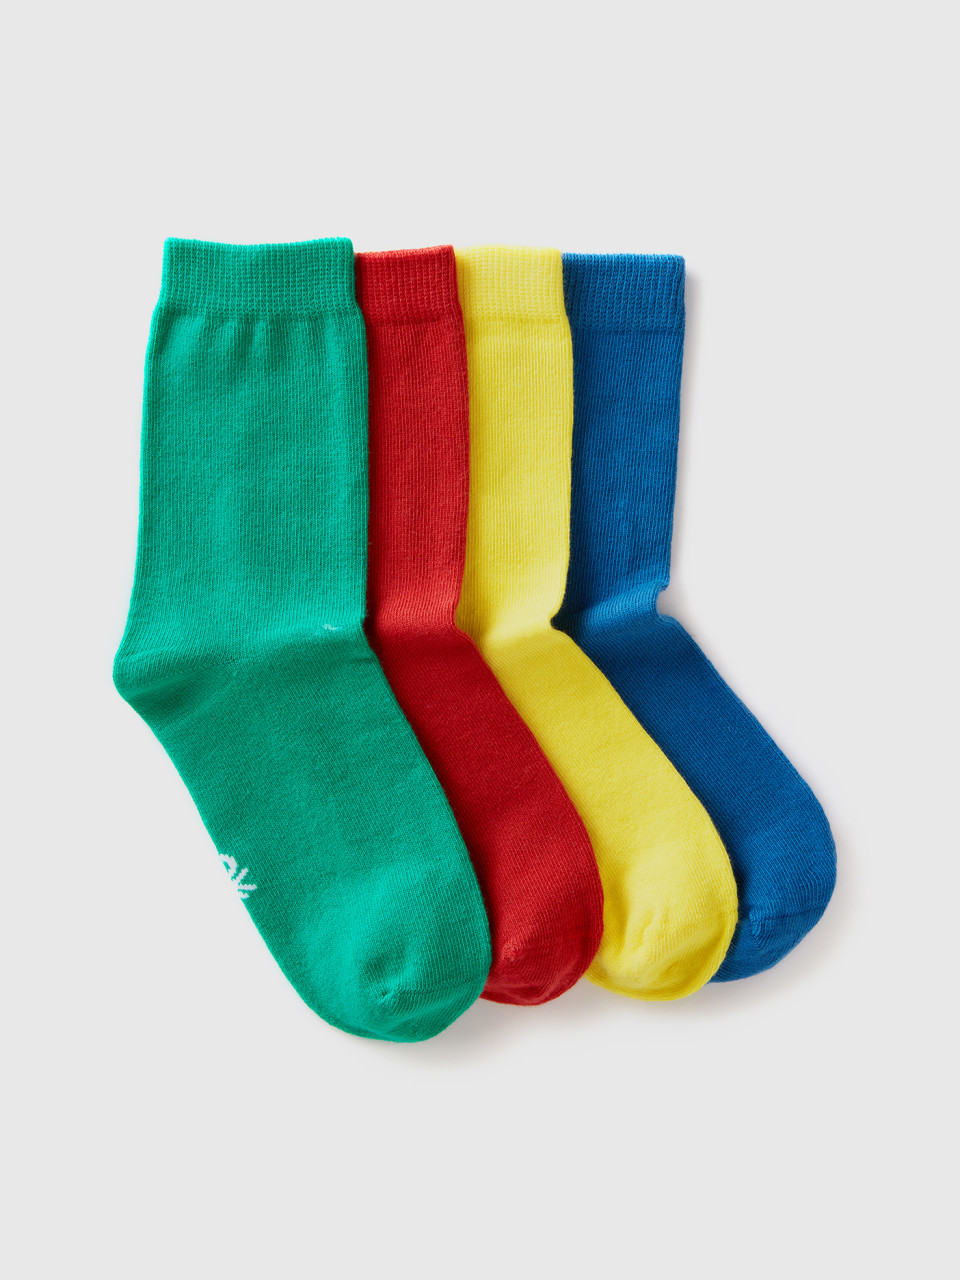 Benetton, Short Sock Set, Multi-color, Kids